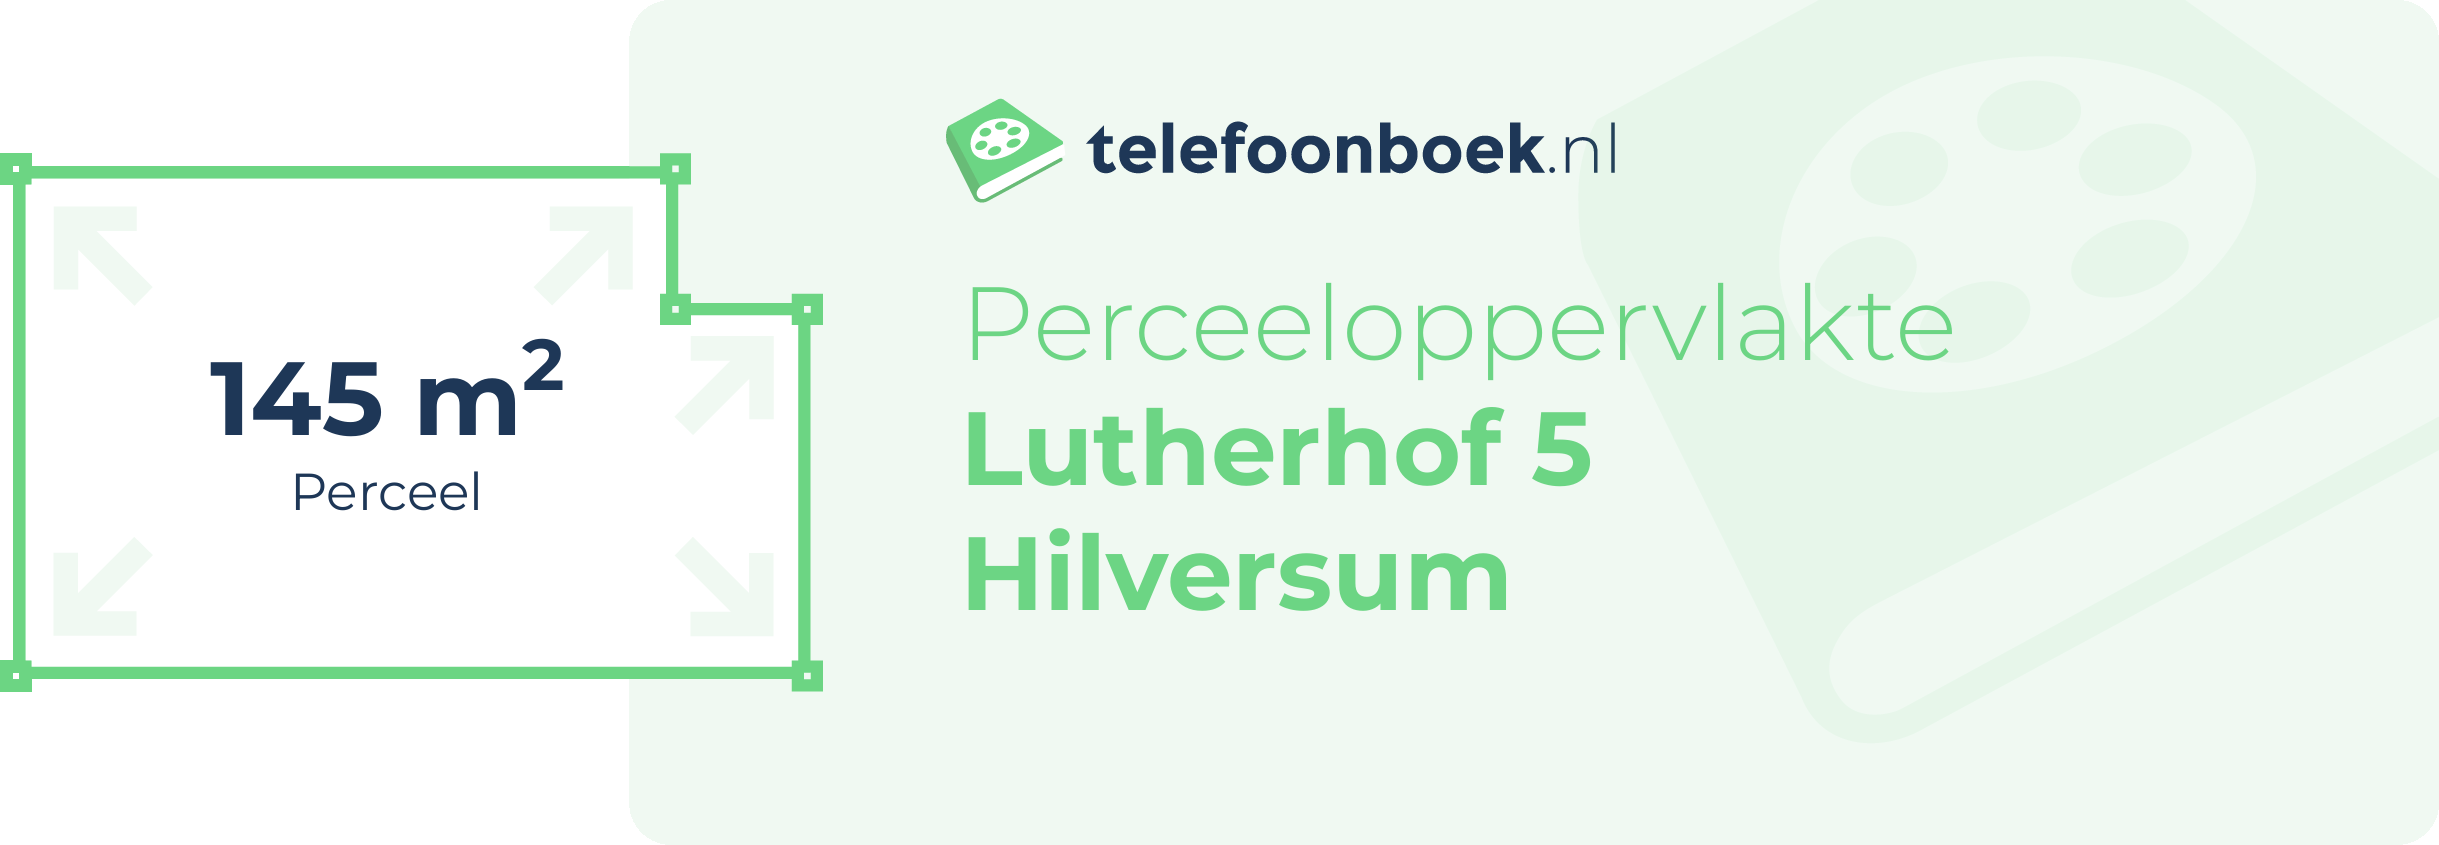 Perceeloppervlakte Lutherhof 5 Hilversum